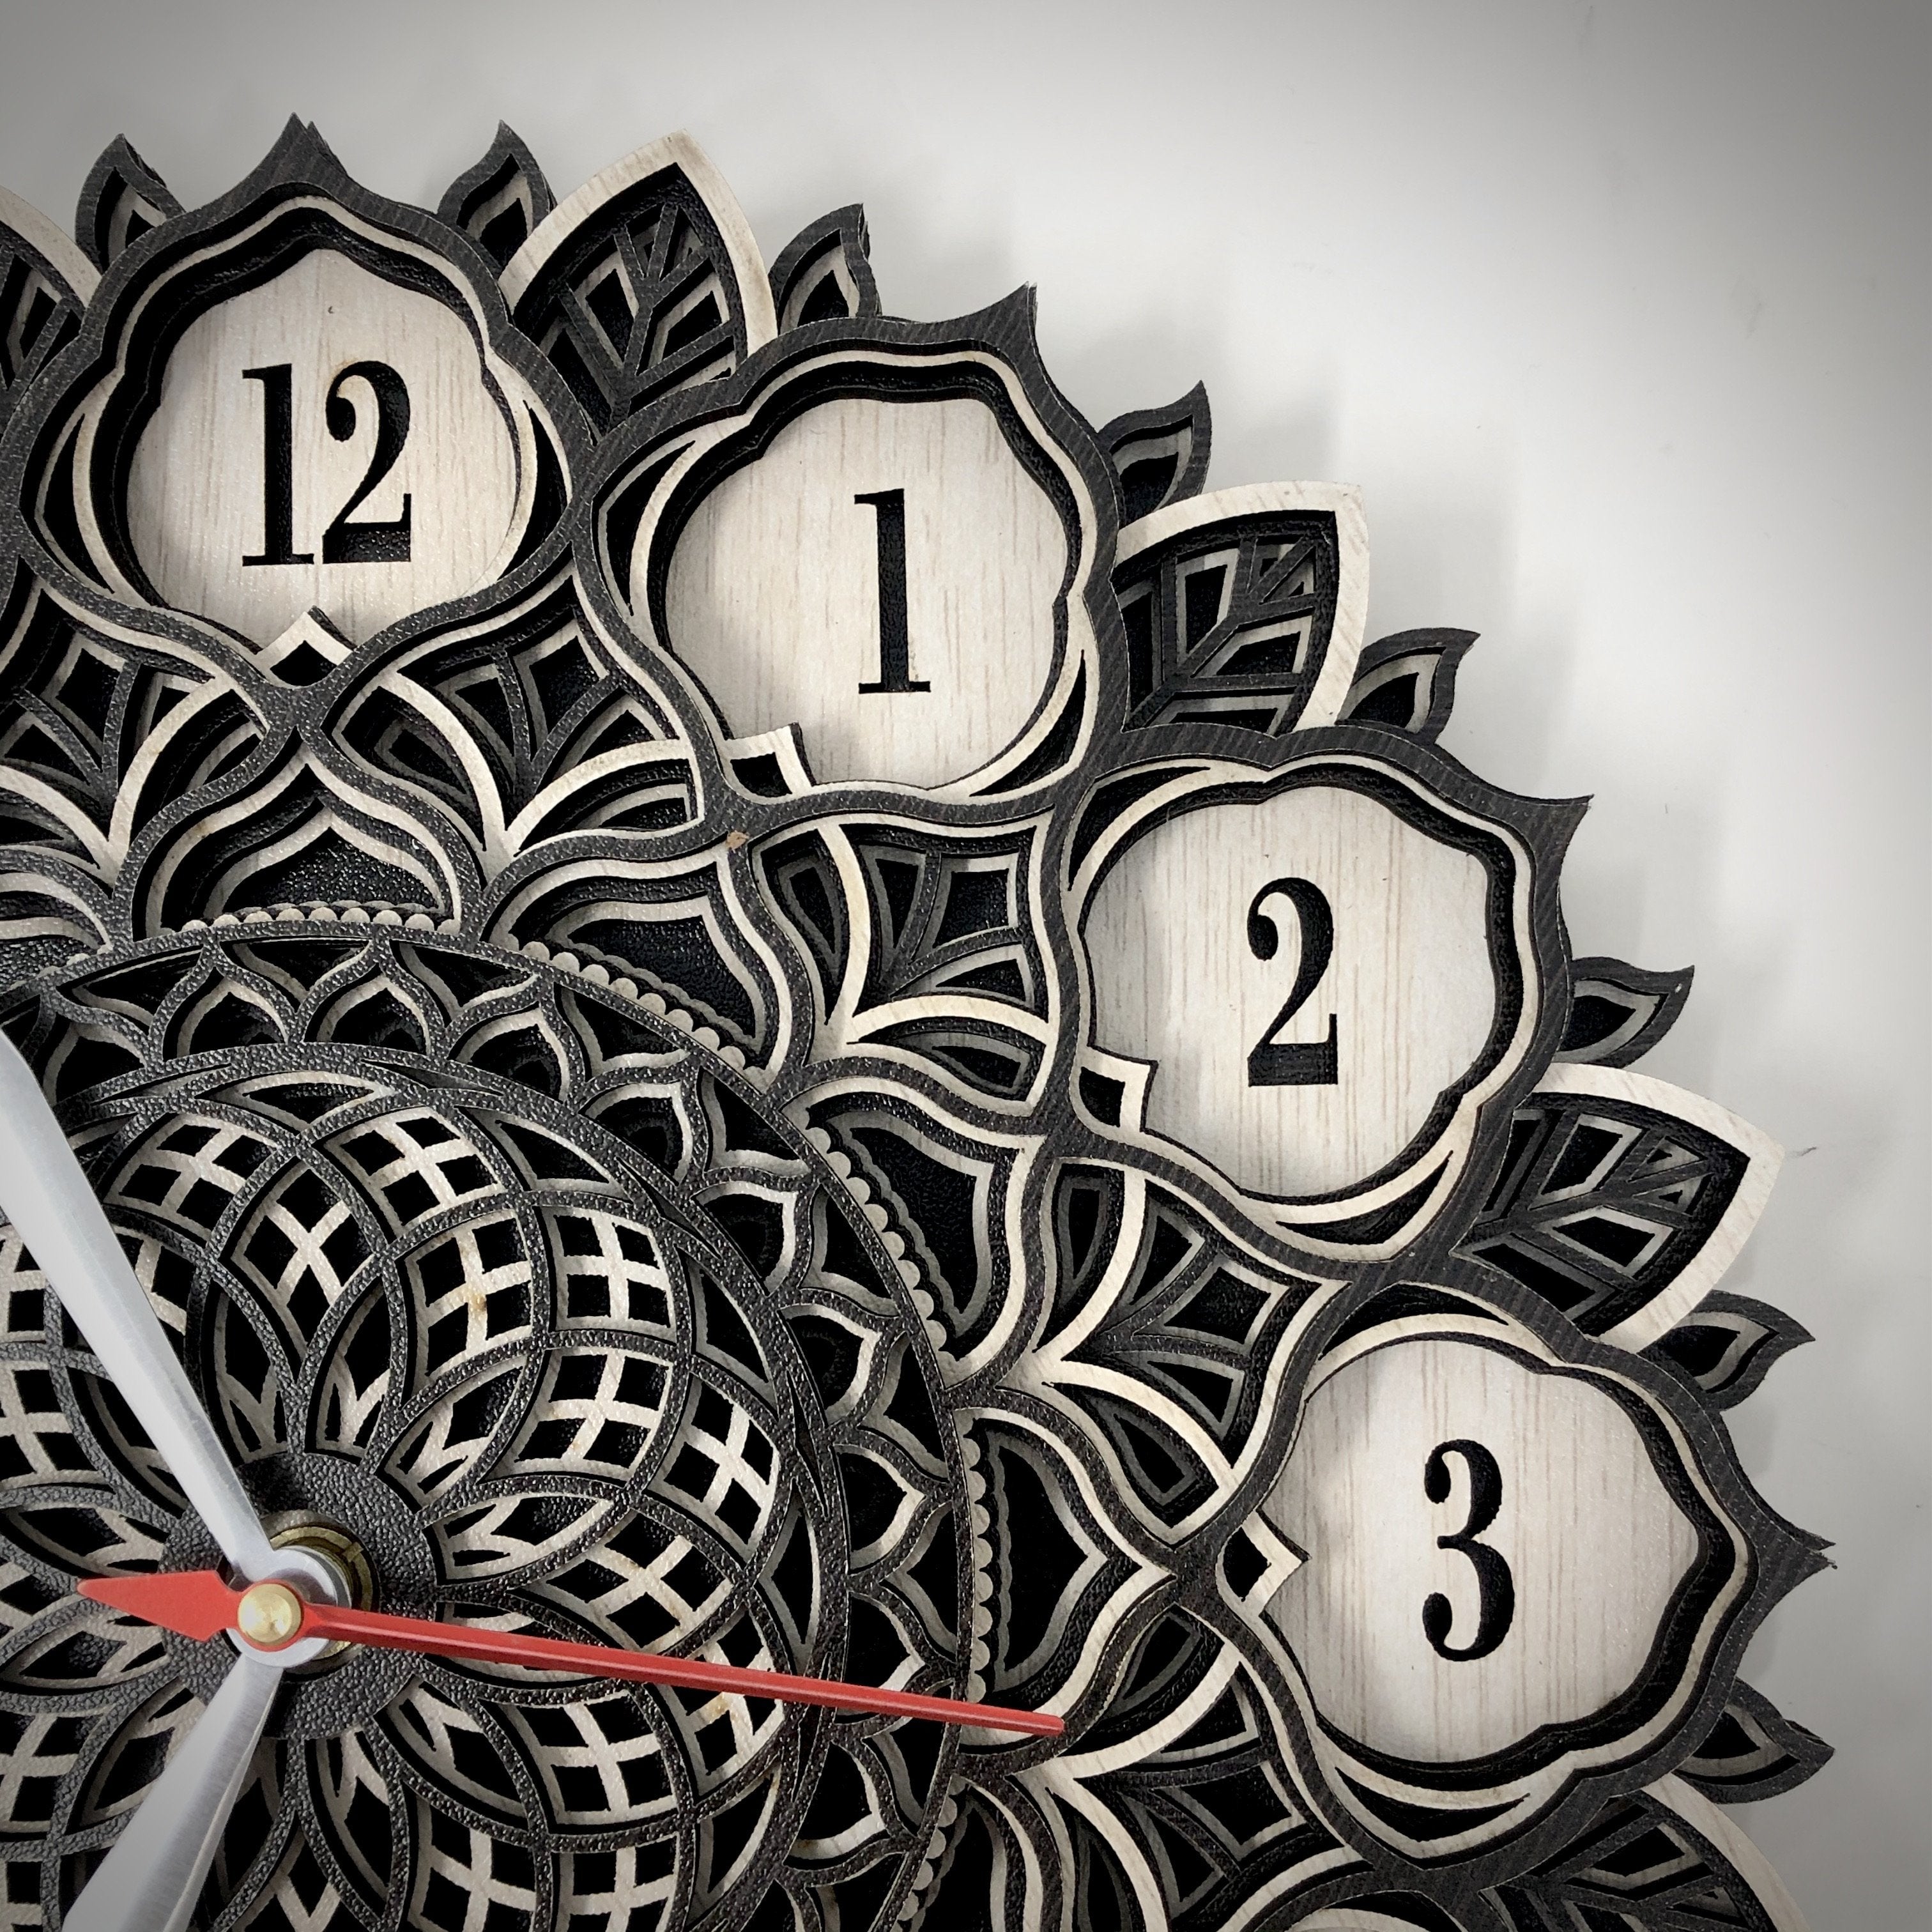 Precious Flower 3D Multilayered Mandala Wall Clock